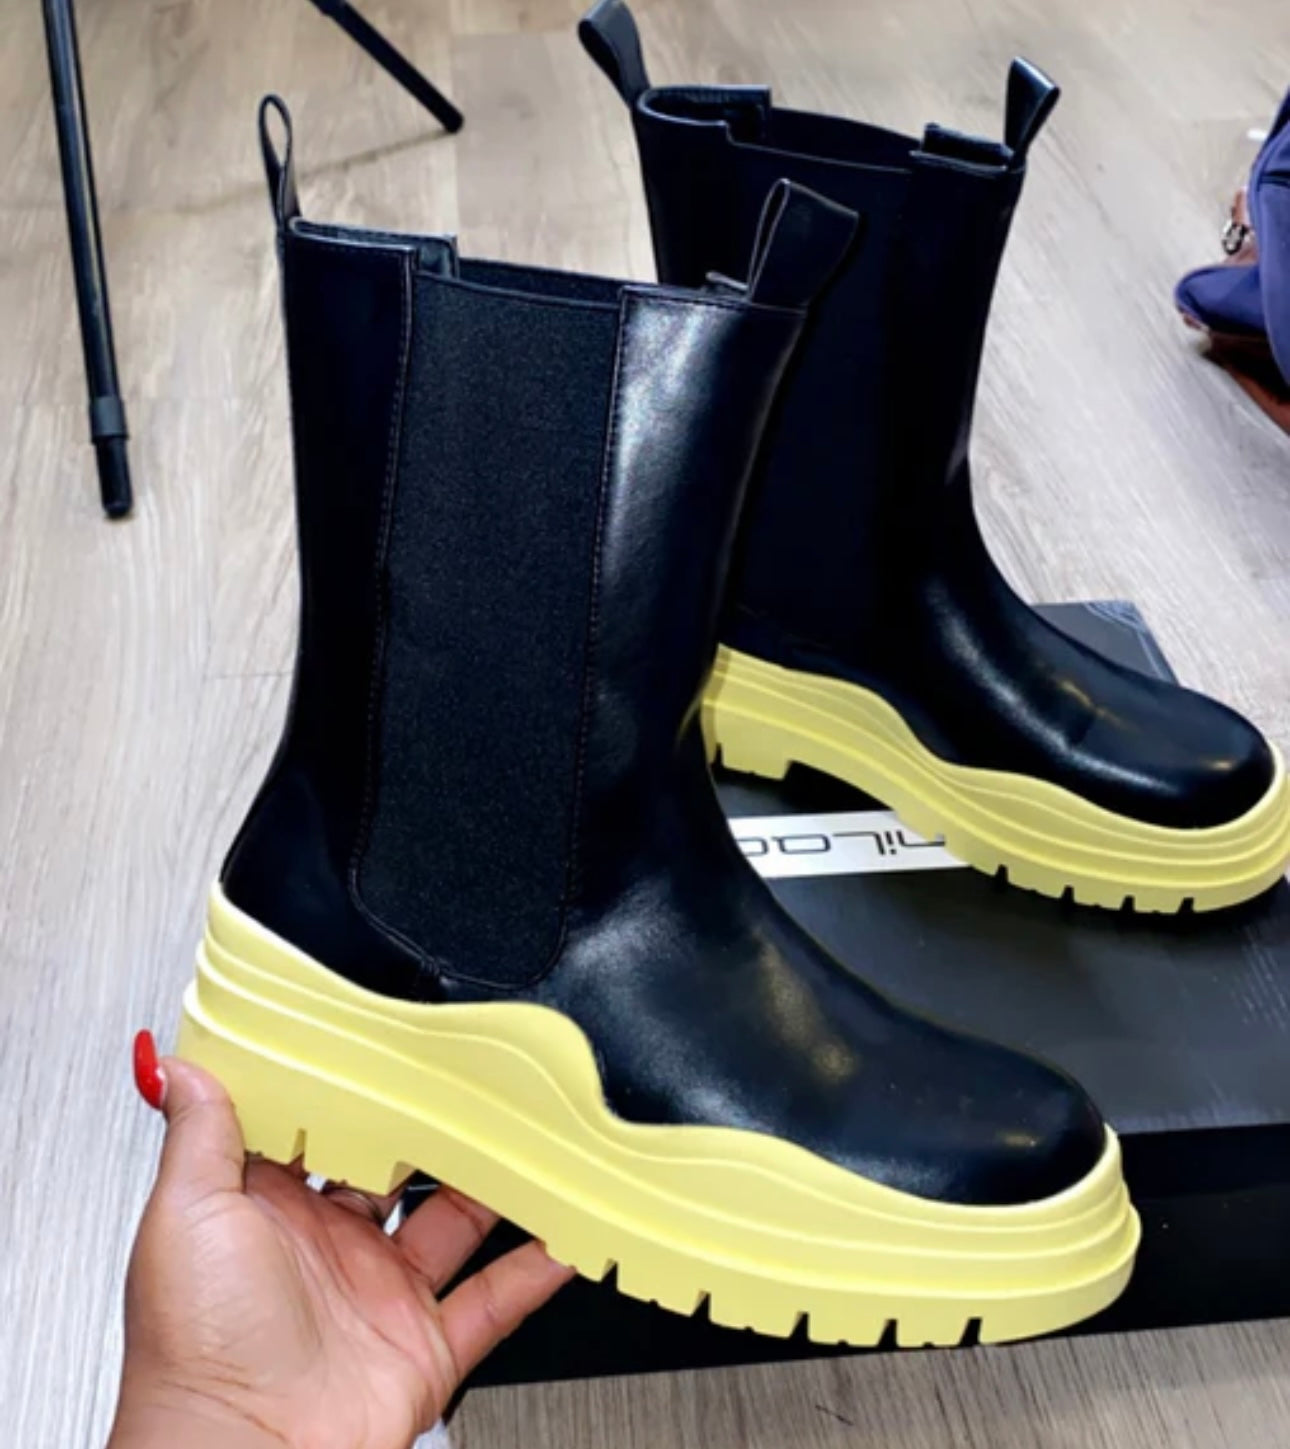 Yellow Jeffery boots